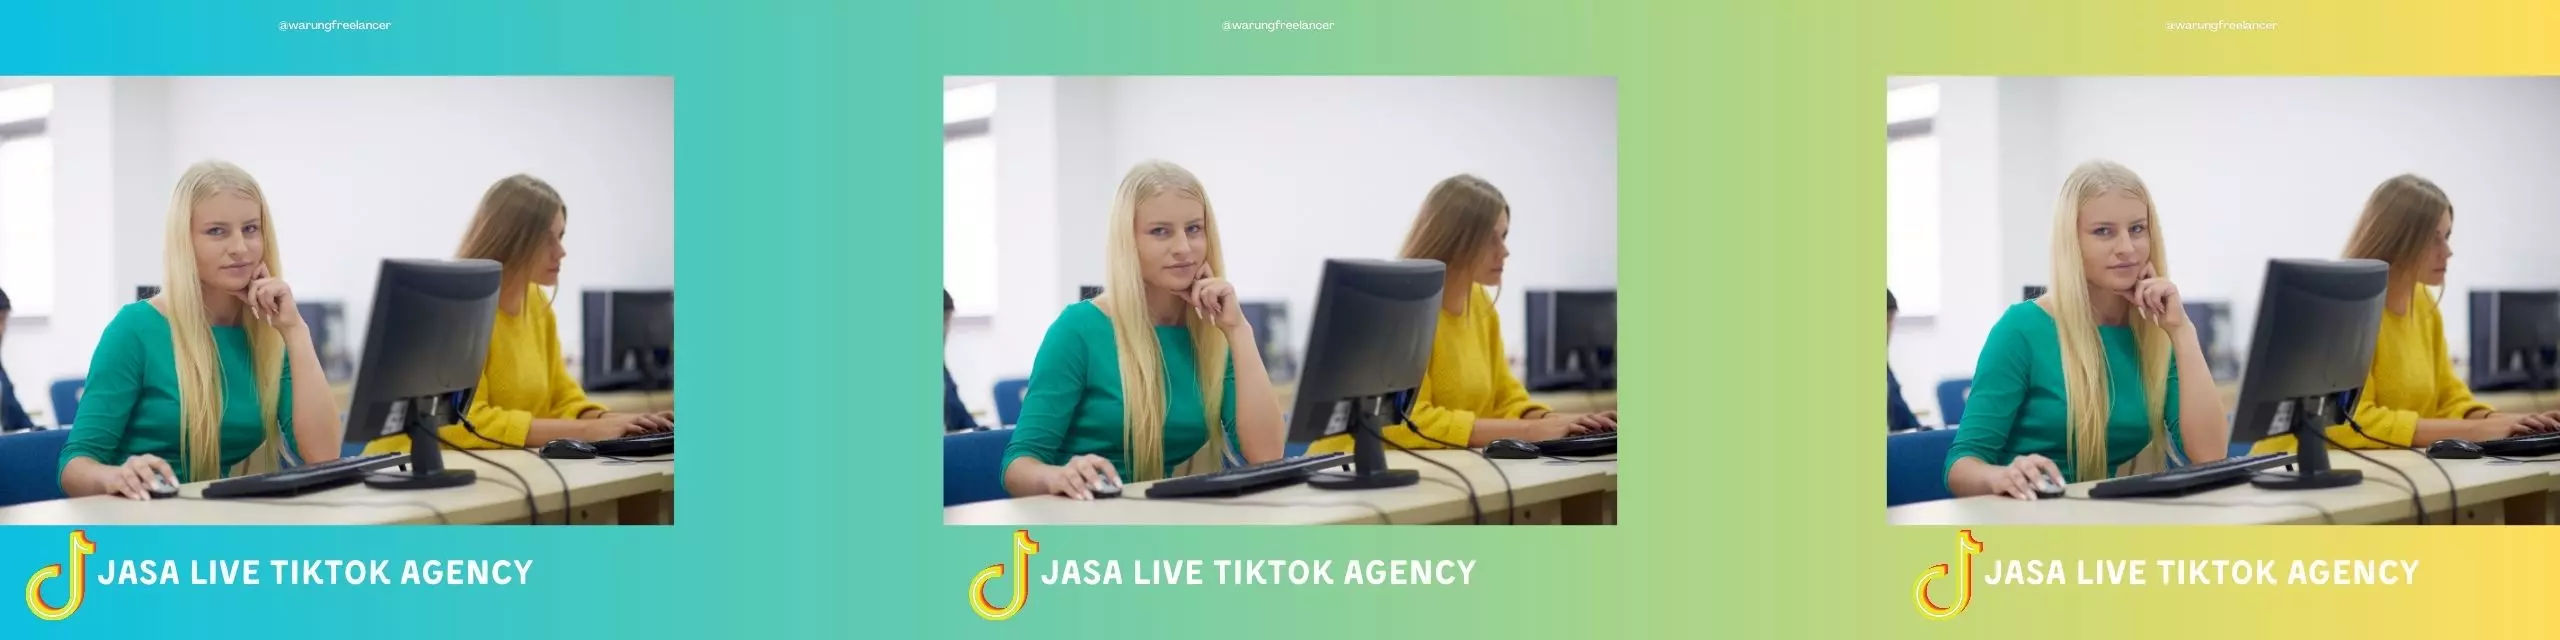 Tiktok Agency Services